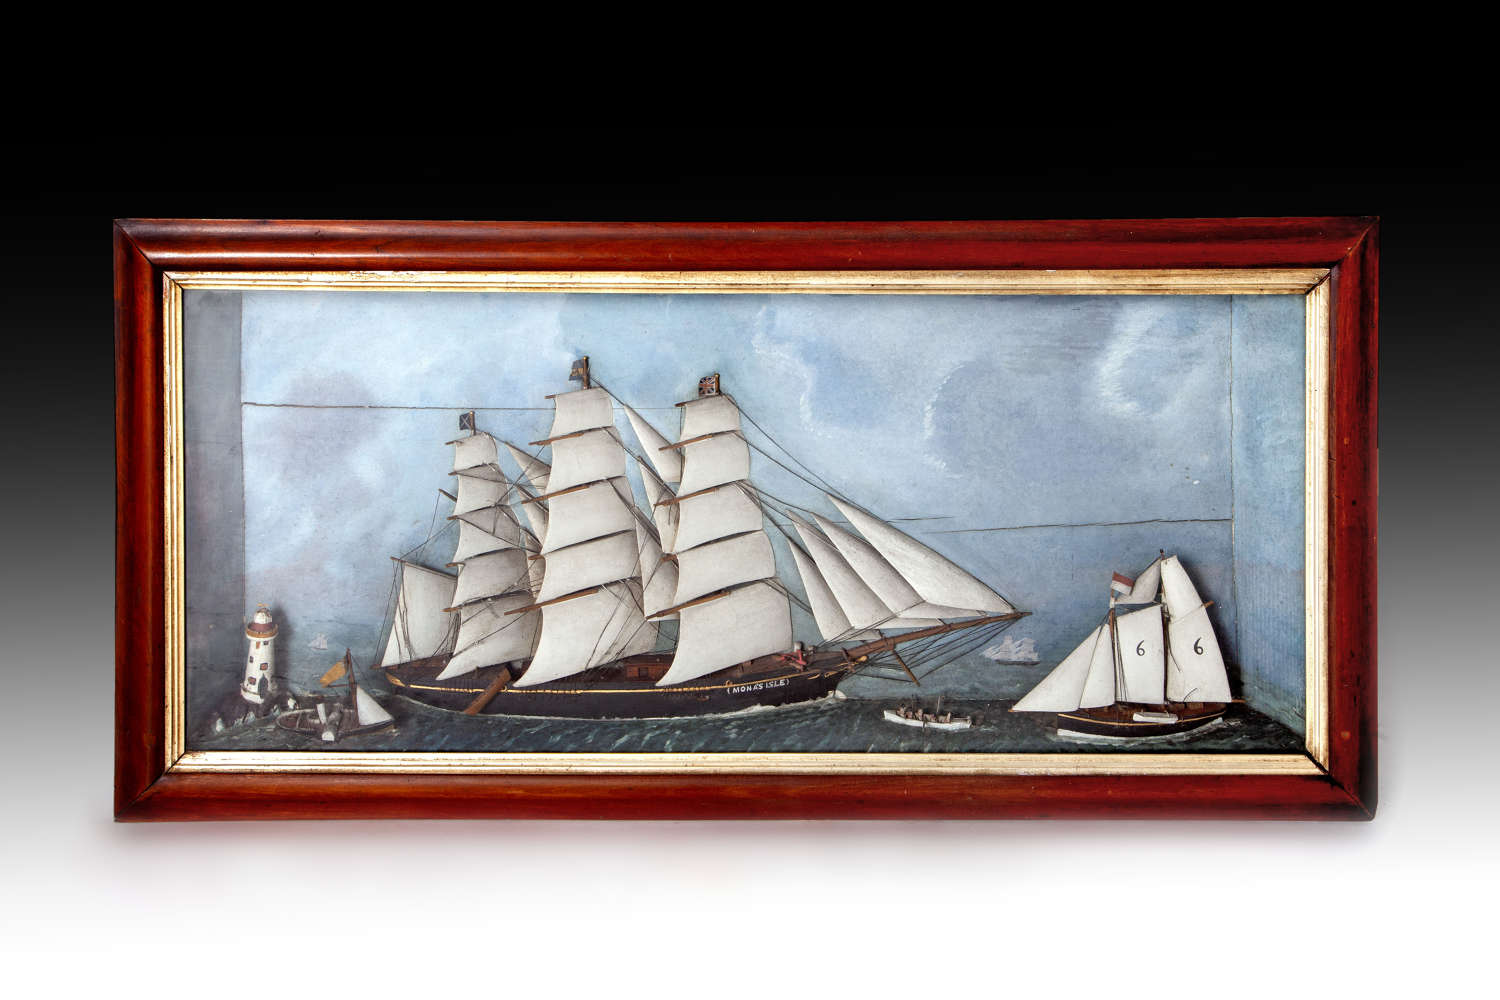 A fine mid 19th century ship diorama